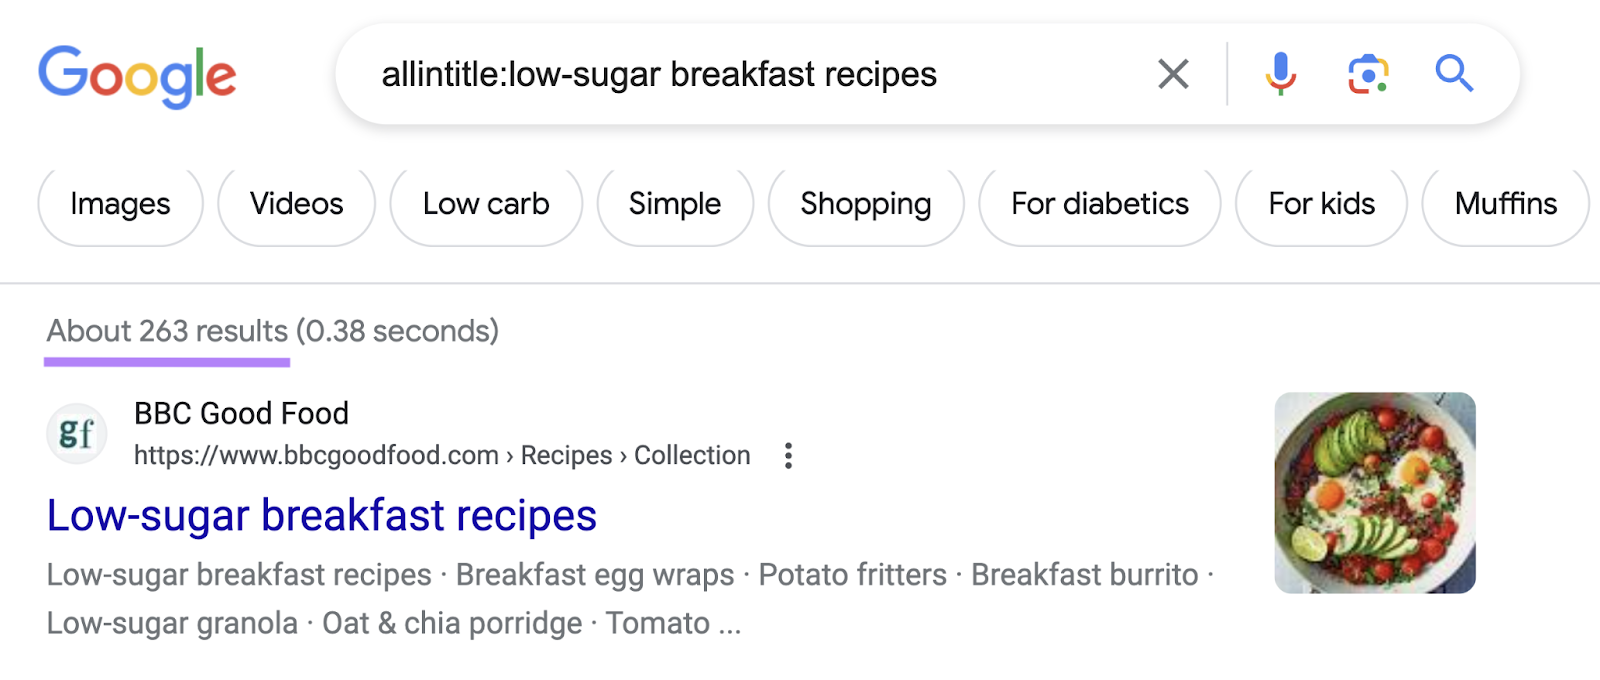 Google's SERP for “allintitle:low-sugar breakfast recipes”